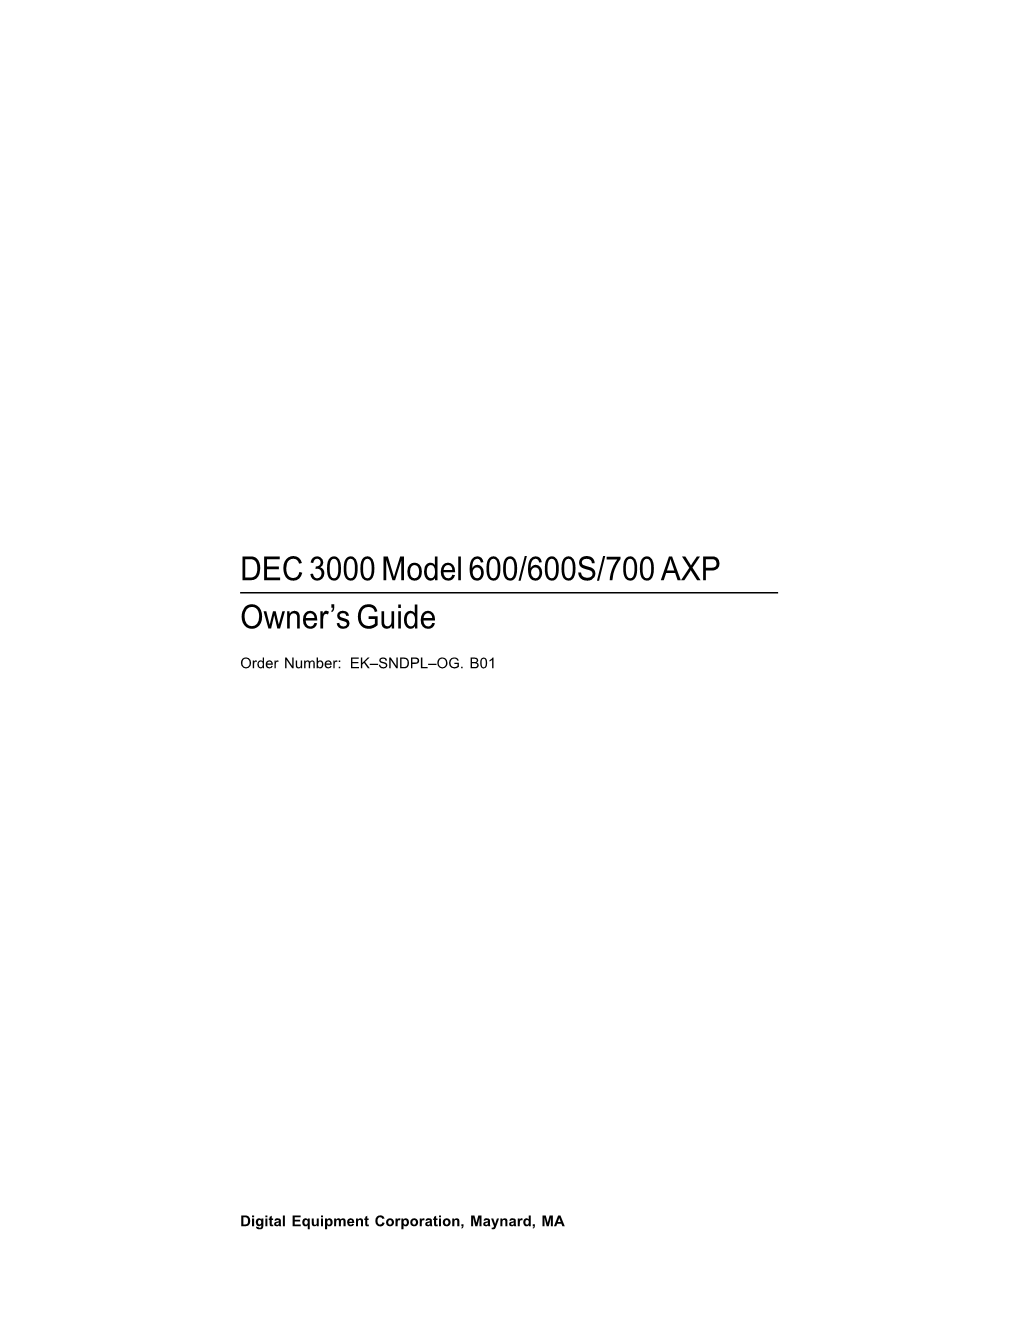 DEC 3000 Model 600/600S/700 AXP Owner's Guide